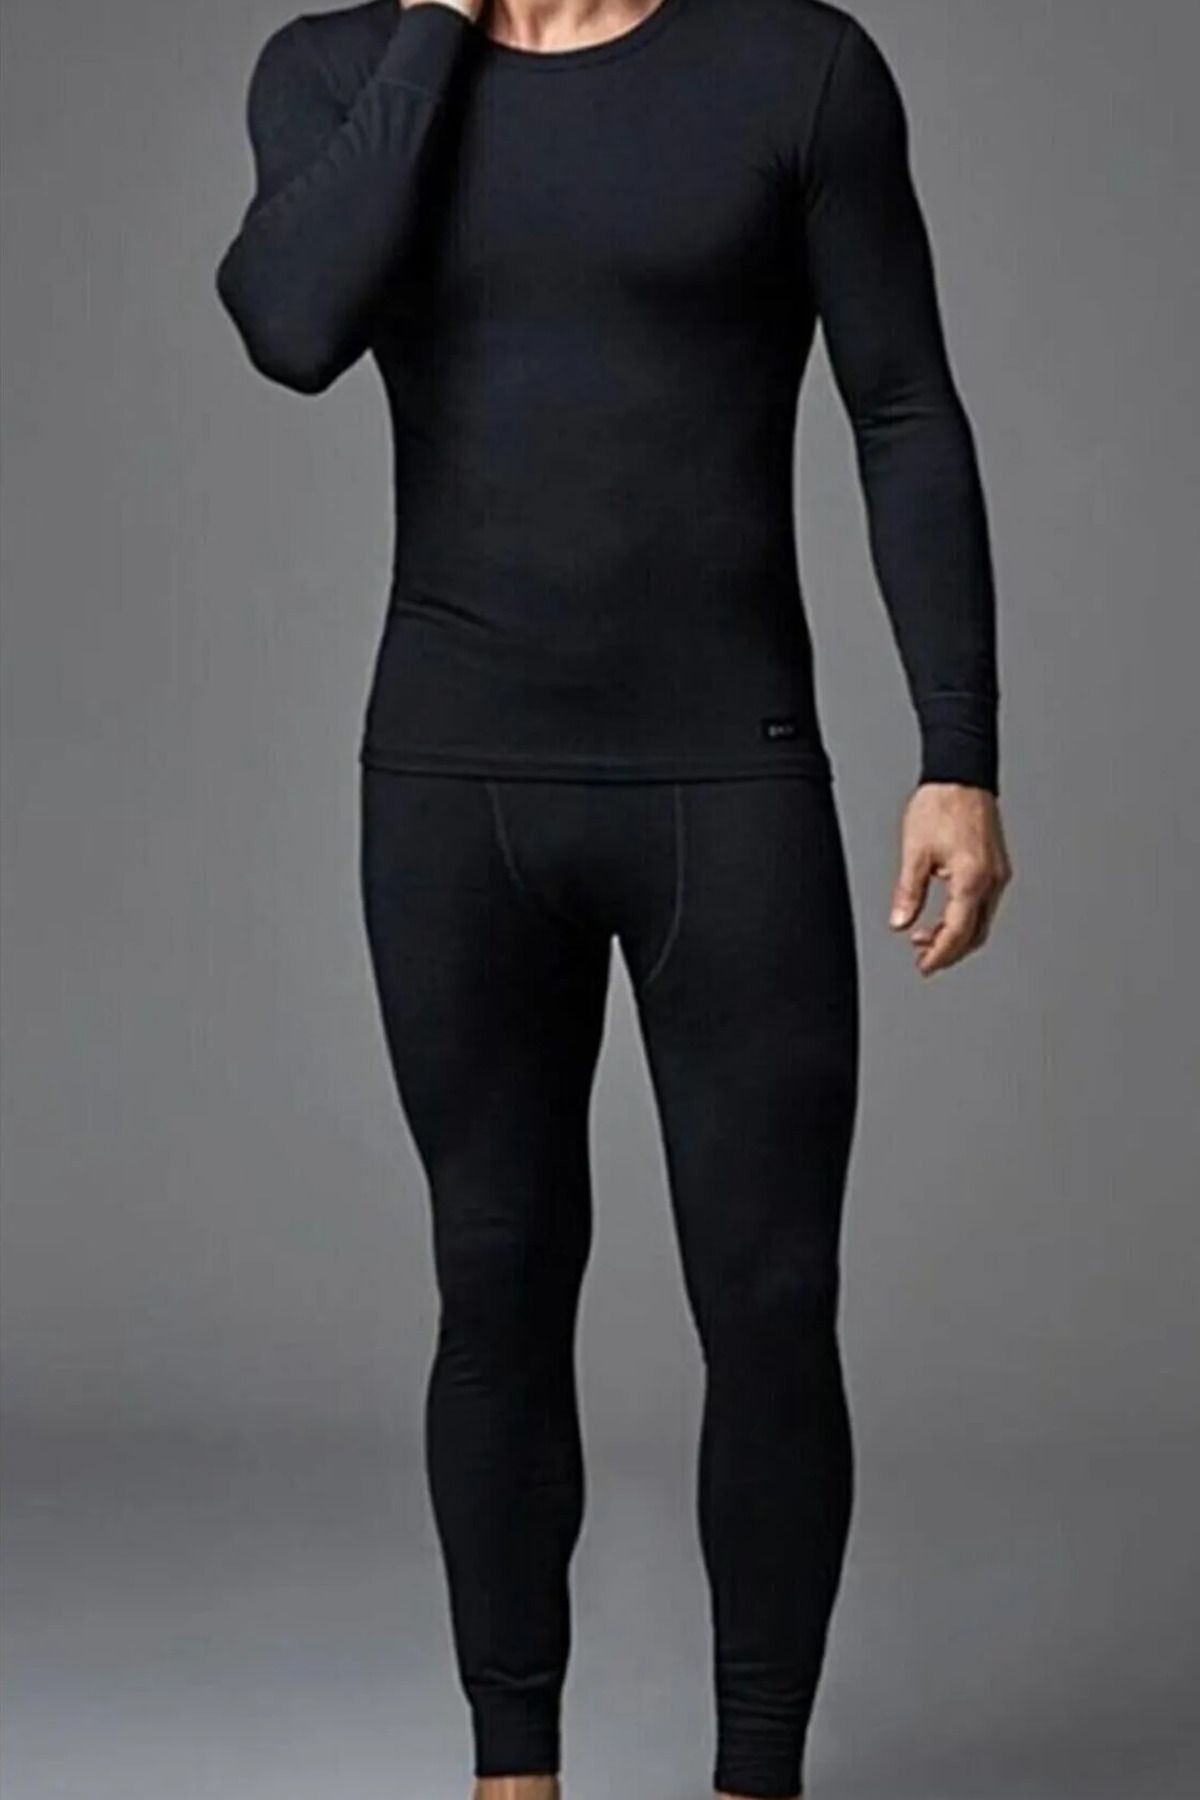 Buy Black Thermal Long Sleeve Top L | Underwear | Tu